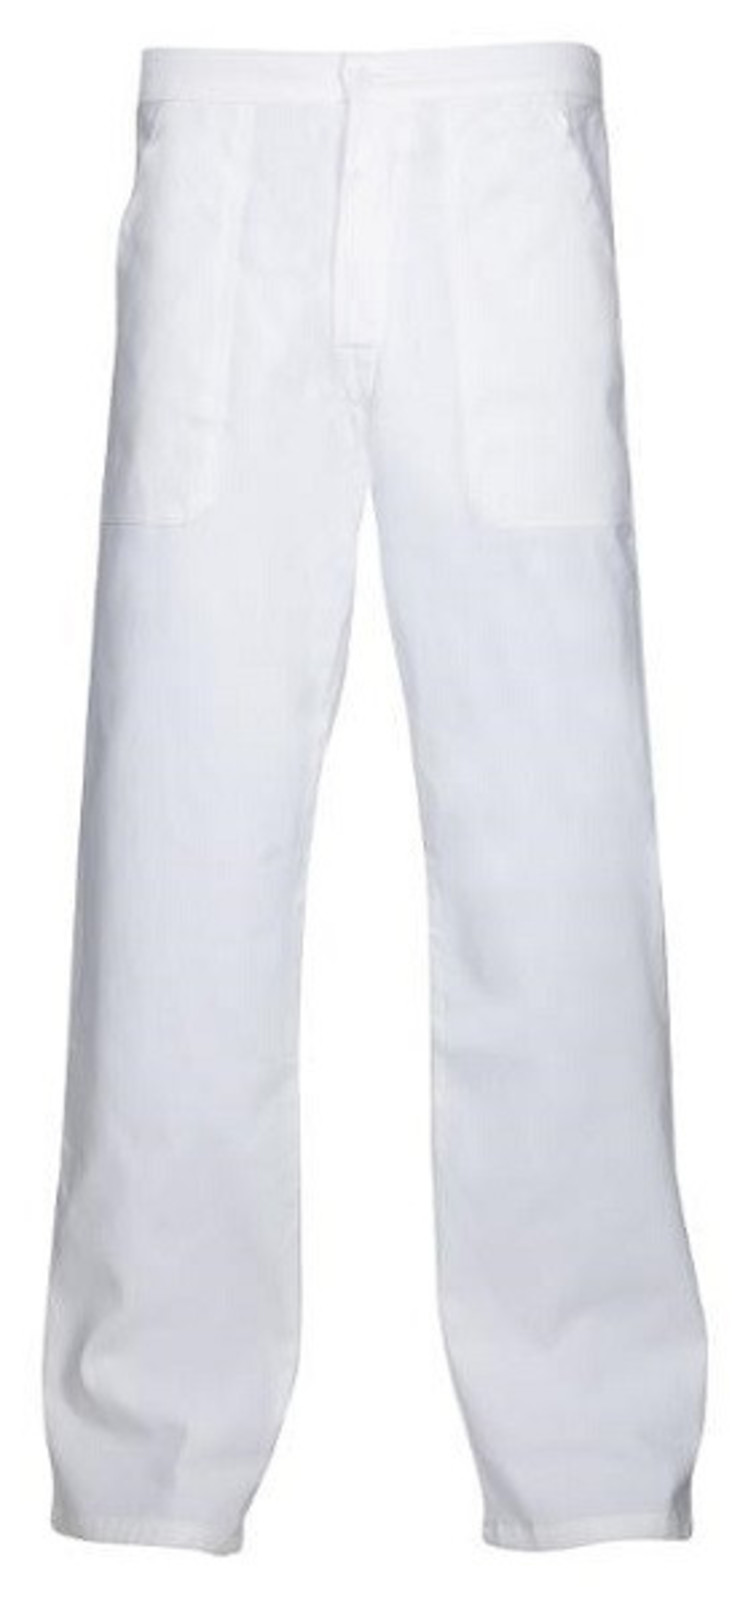 Pánske biele nohavice Ardon Sander - veľkosť: 62, farba: biela